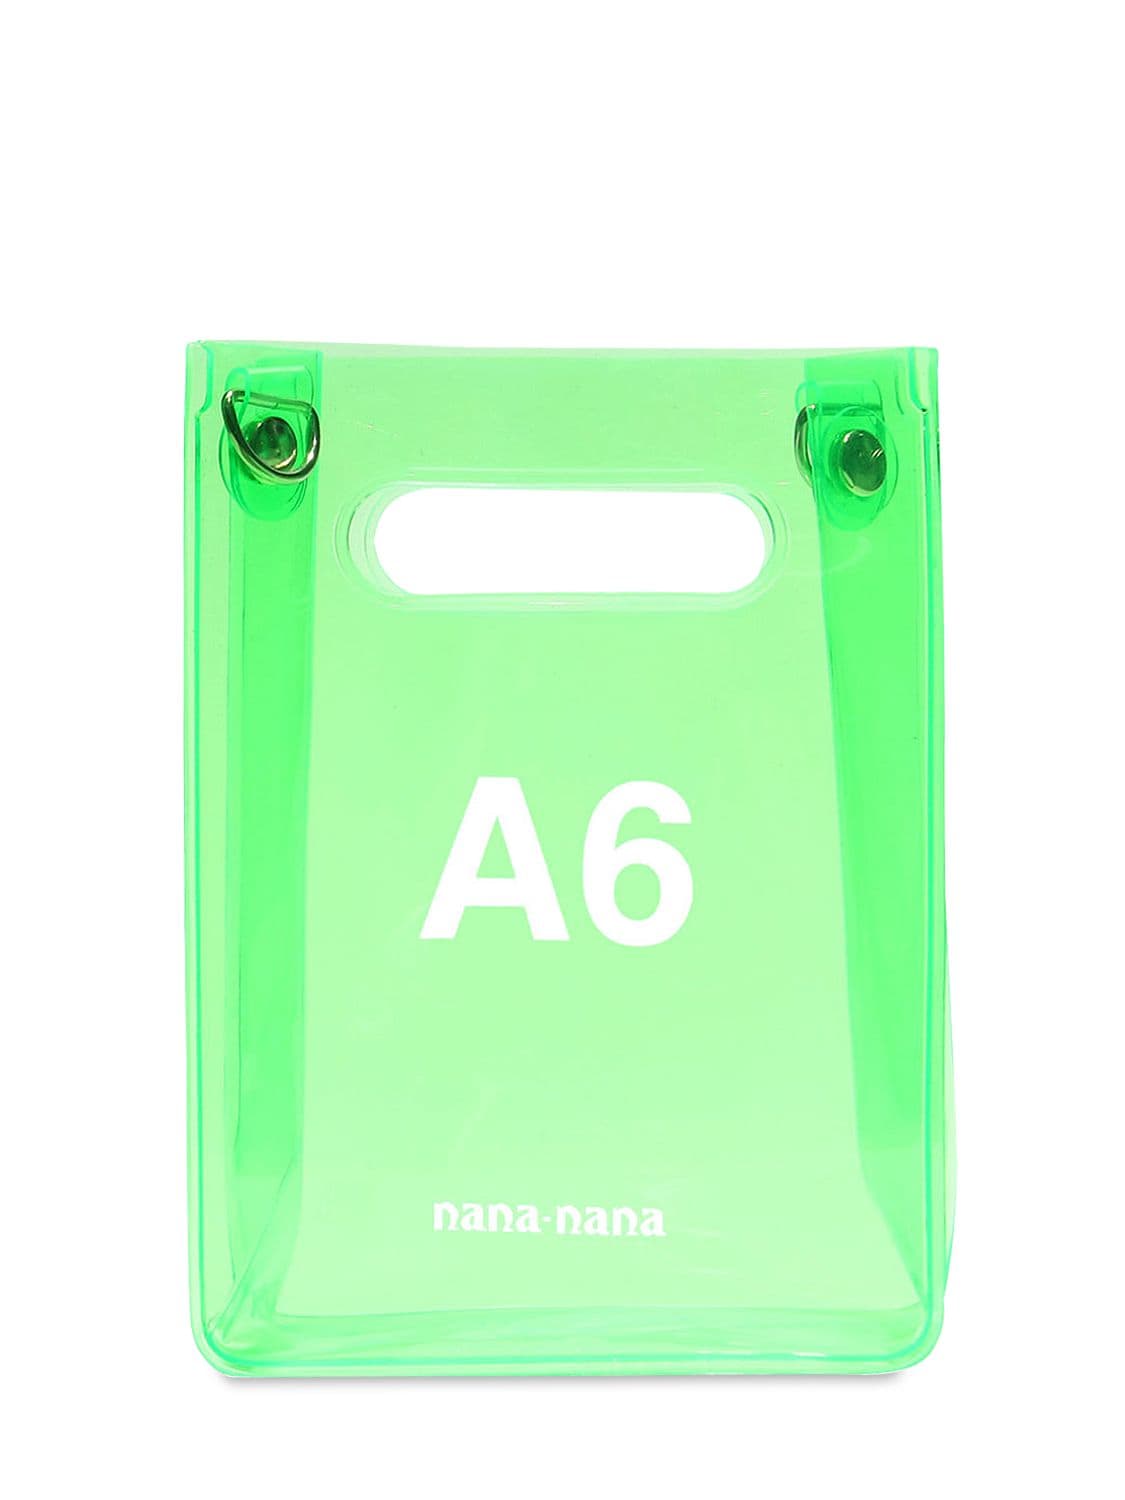 Nana-nana A6 Pvc Shopping Bag In Neon Green